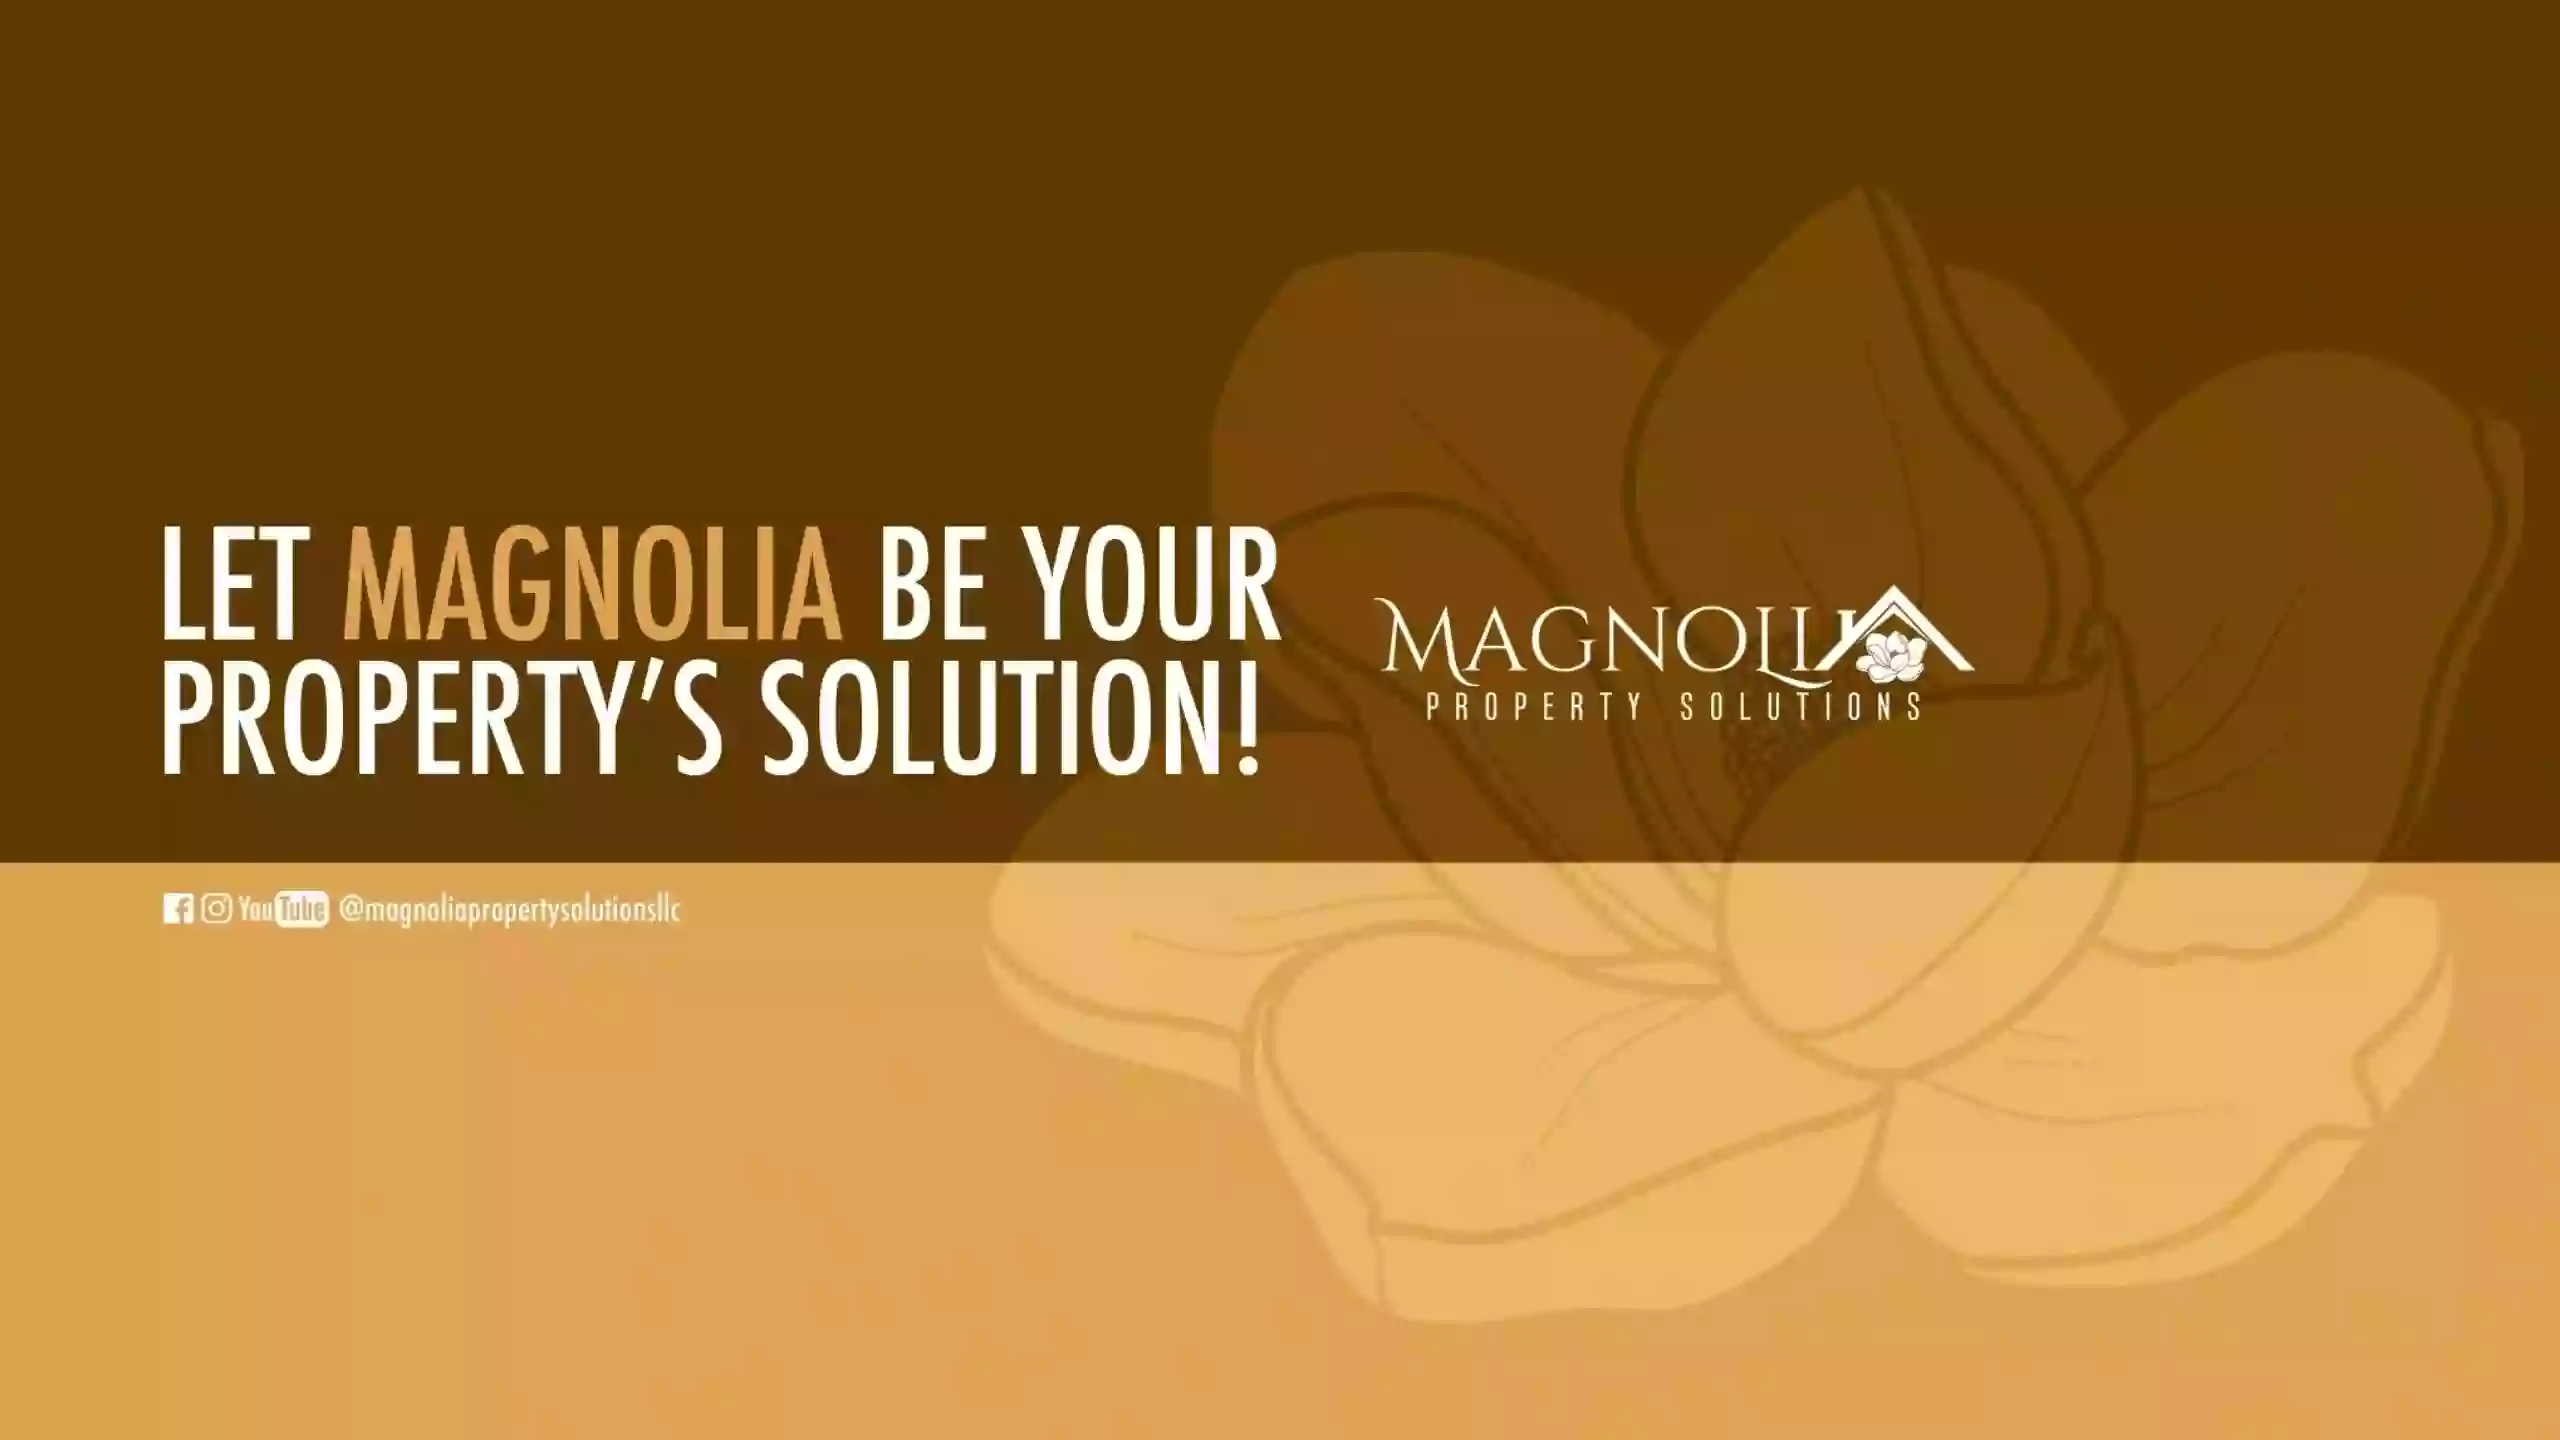 Magnolia Property Solutions, LLC